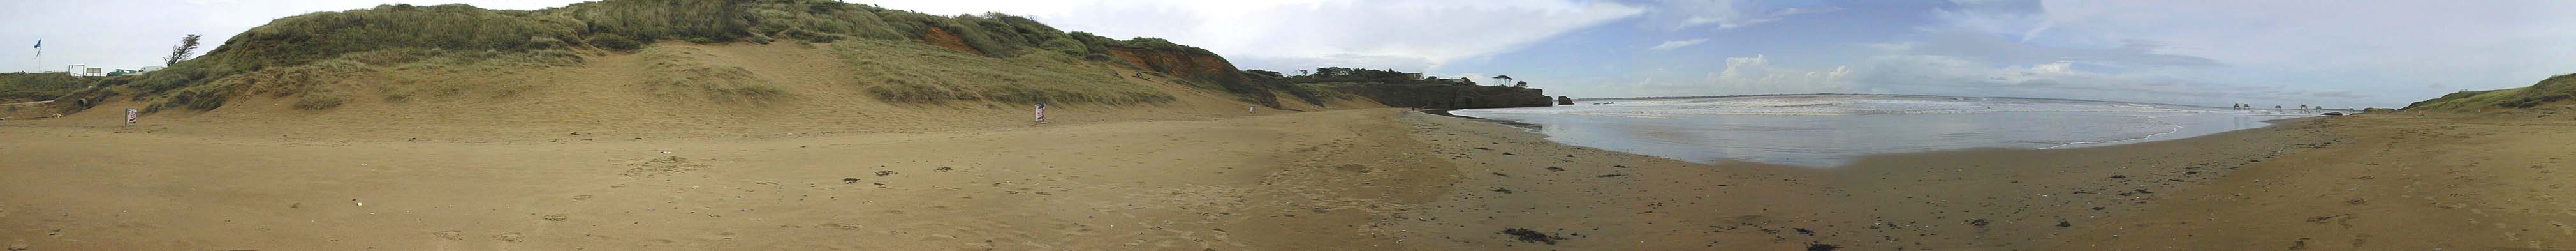 Panorama : Visite virtuelle de la plage de Gohaud.